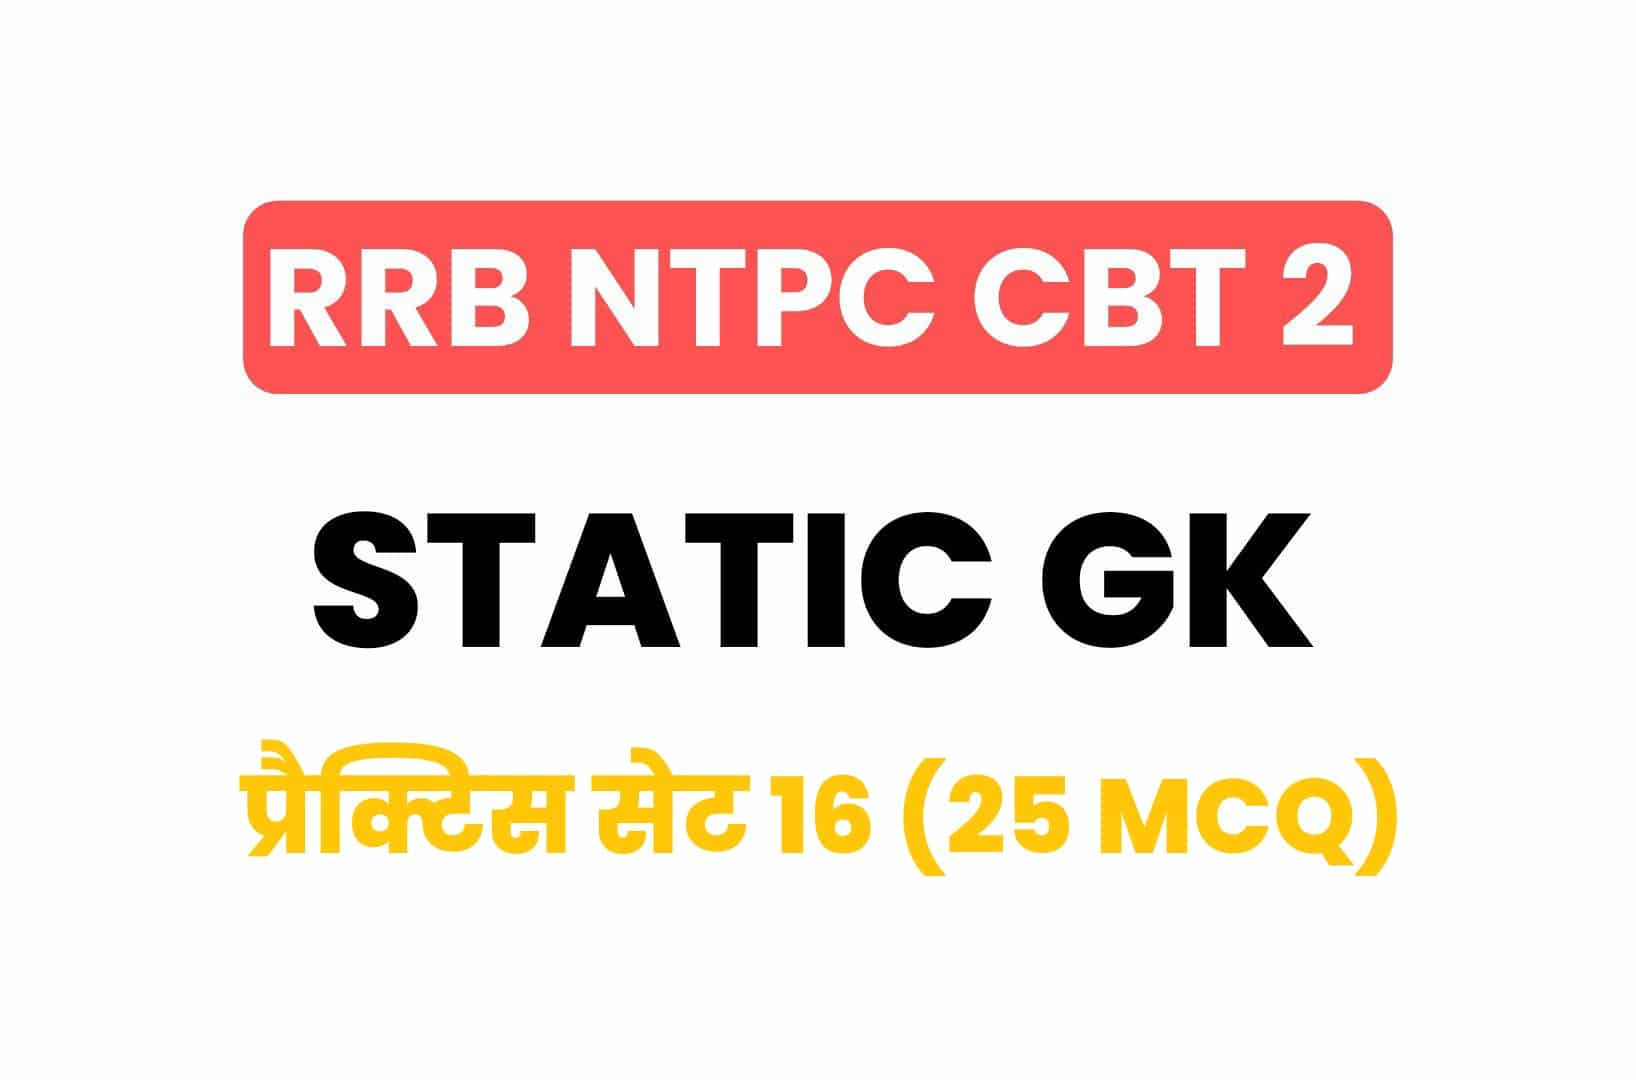 RRB NTPC CBT 2 Static GK प्रैक्टिस सेट 16: परीक्षा ने पूछें गये इन महत्वपूर्ण प्रश्नों का जरूर करें अध्ययन